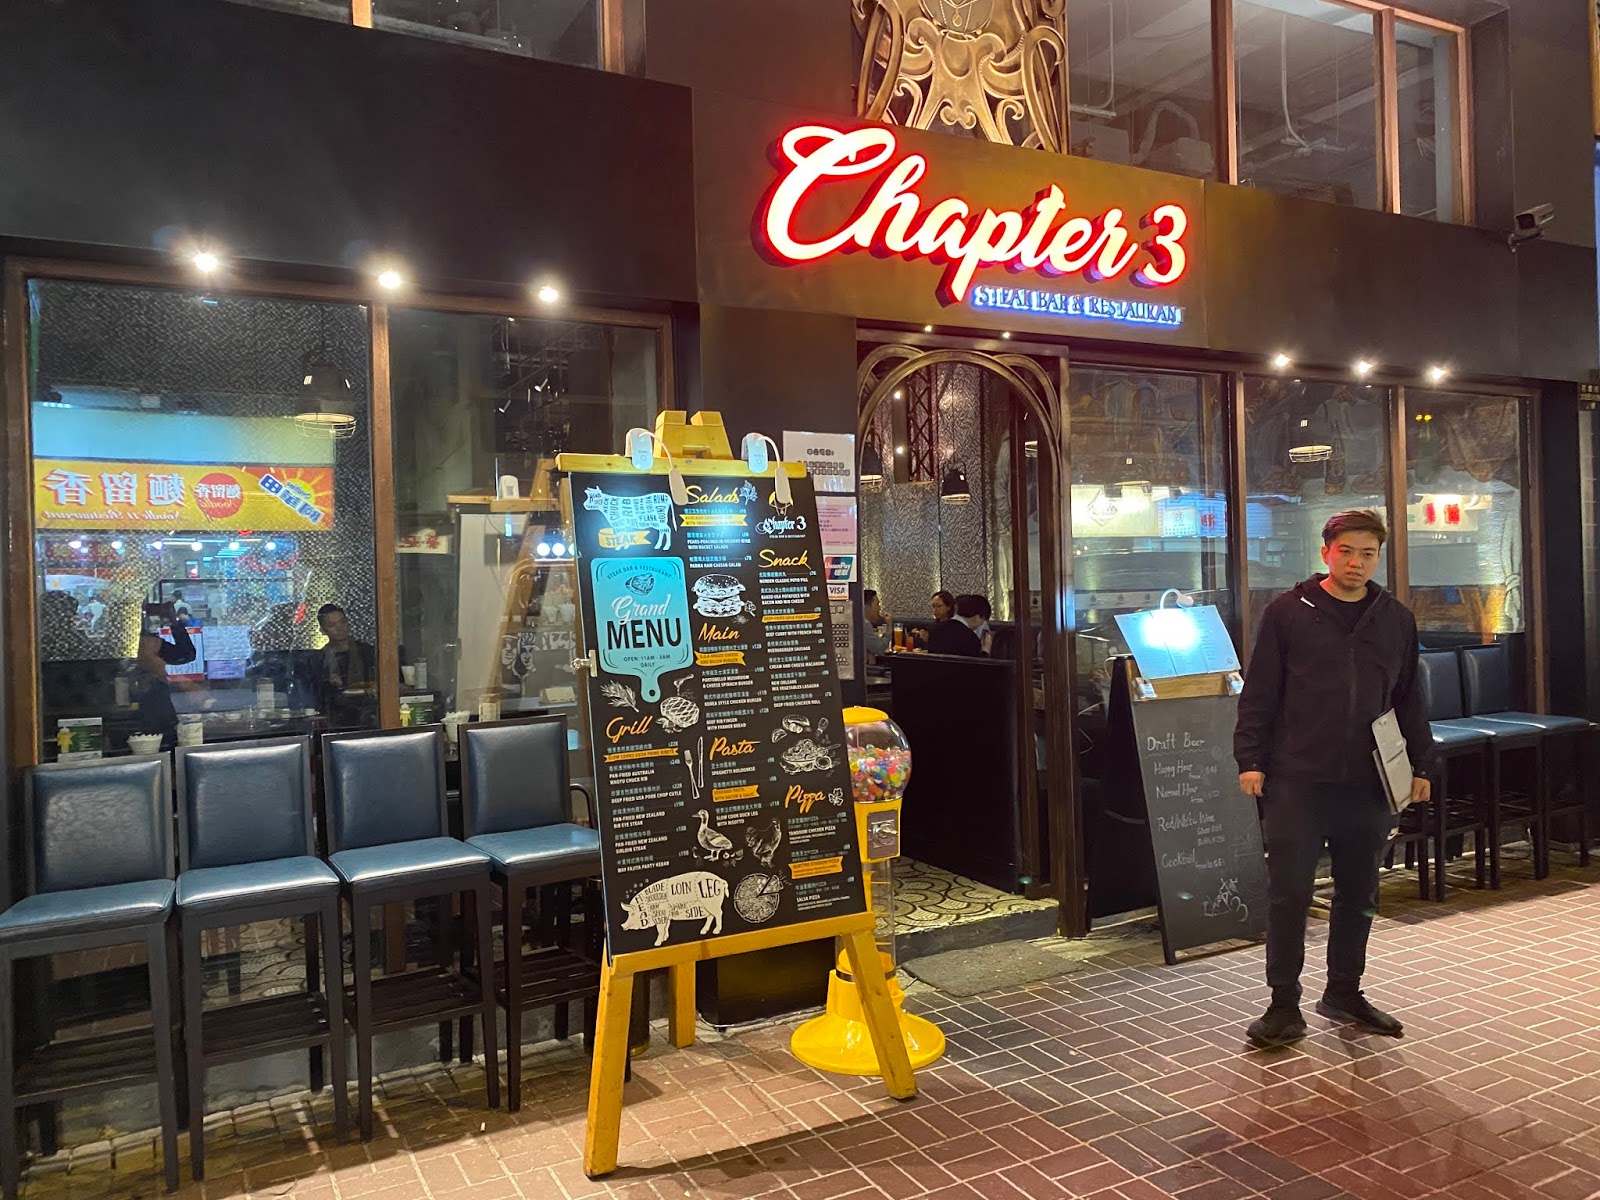 ◕◡◕太子高質酒吧♥Chapter 3 Steak Bar & Restaurant